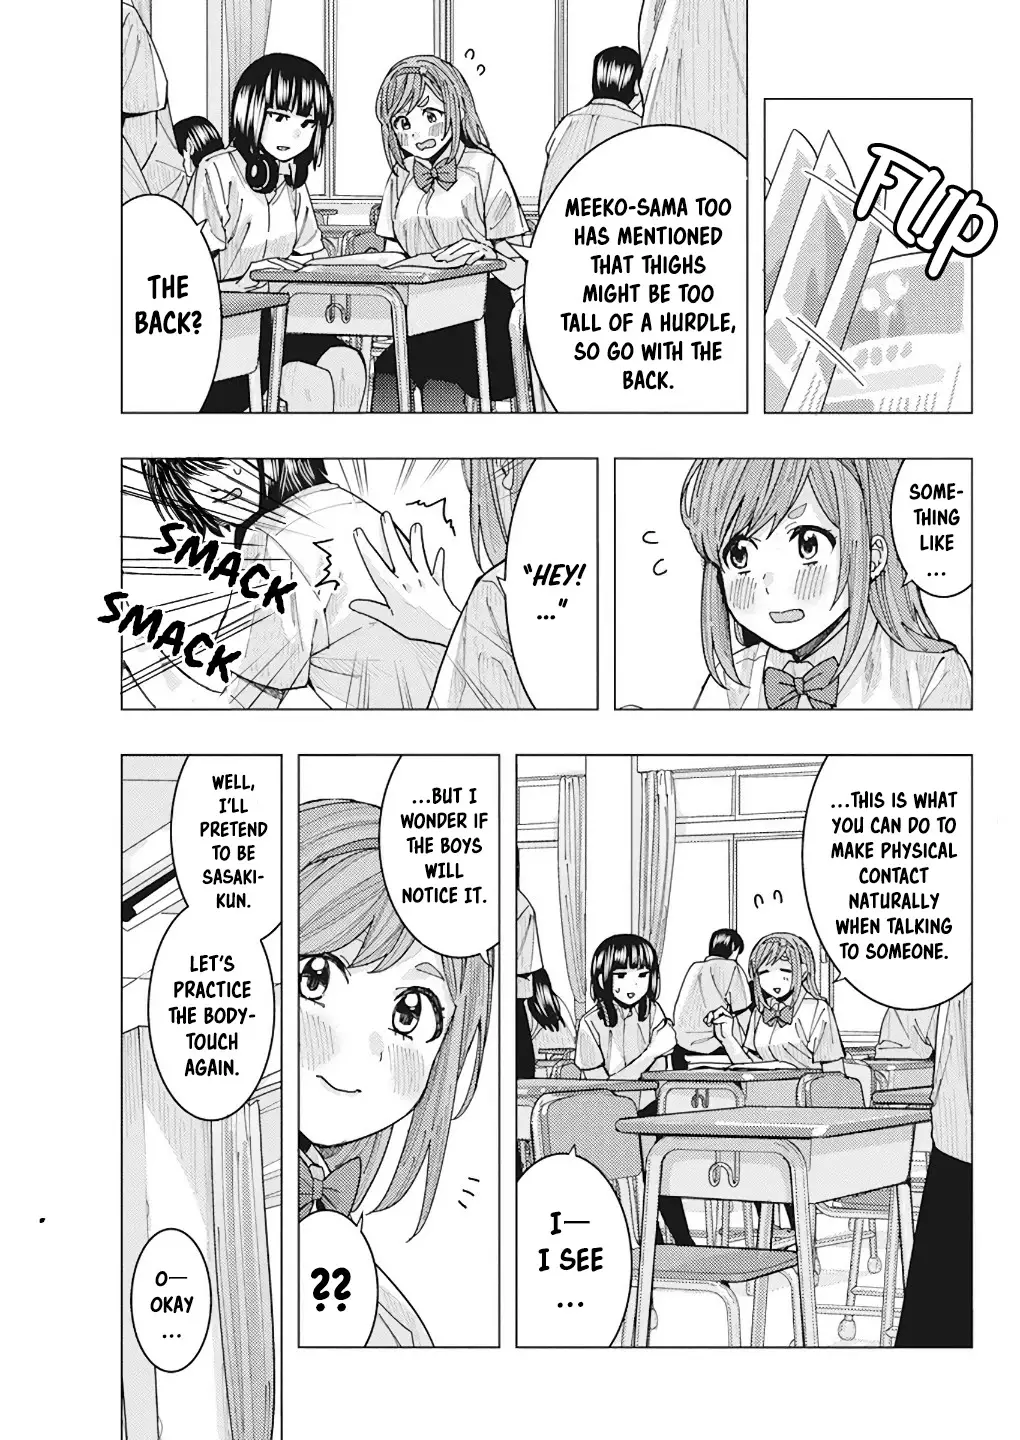 "nobukuni-San" Does She Like Me? - 13 page 7-52a390b5